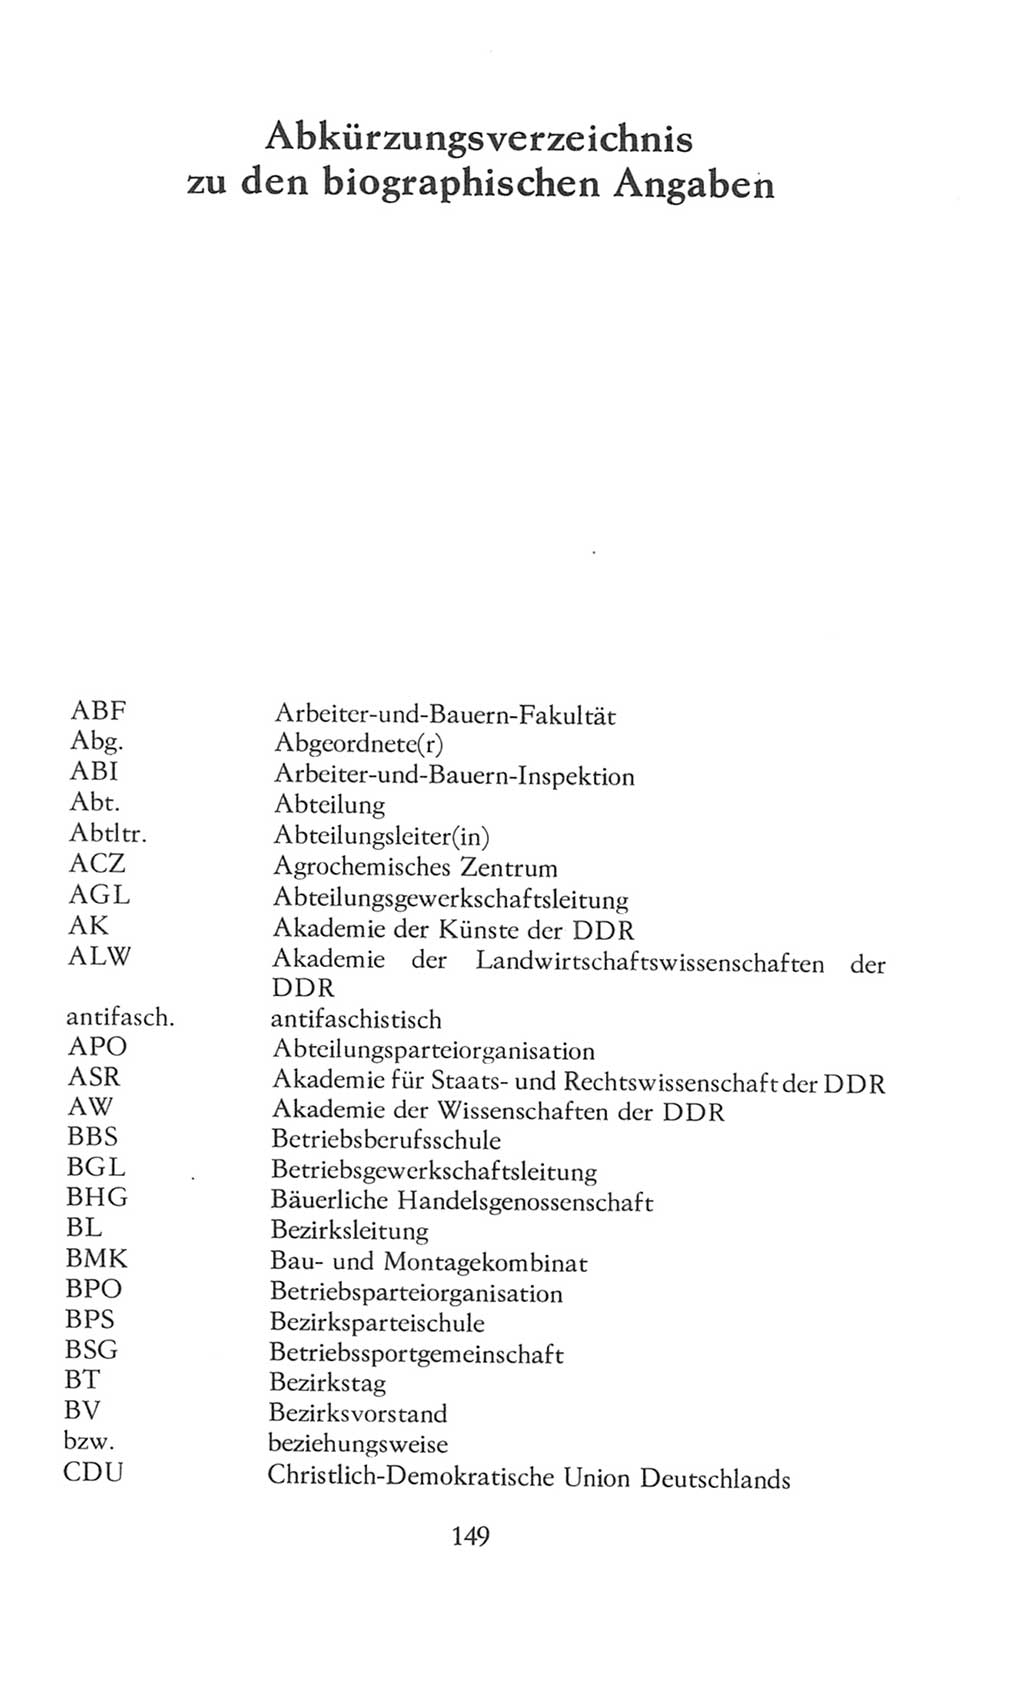 Volkskammer (VK) der Deutschen Demokratischen Republik (DDR), 8. Wahlperiode 1981-1986, Seite 149 (VK. DDR 8. WP. 1981-1986, S. 149)